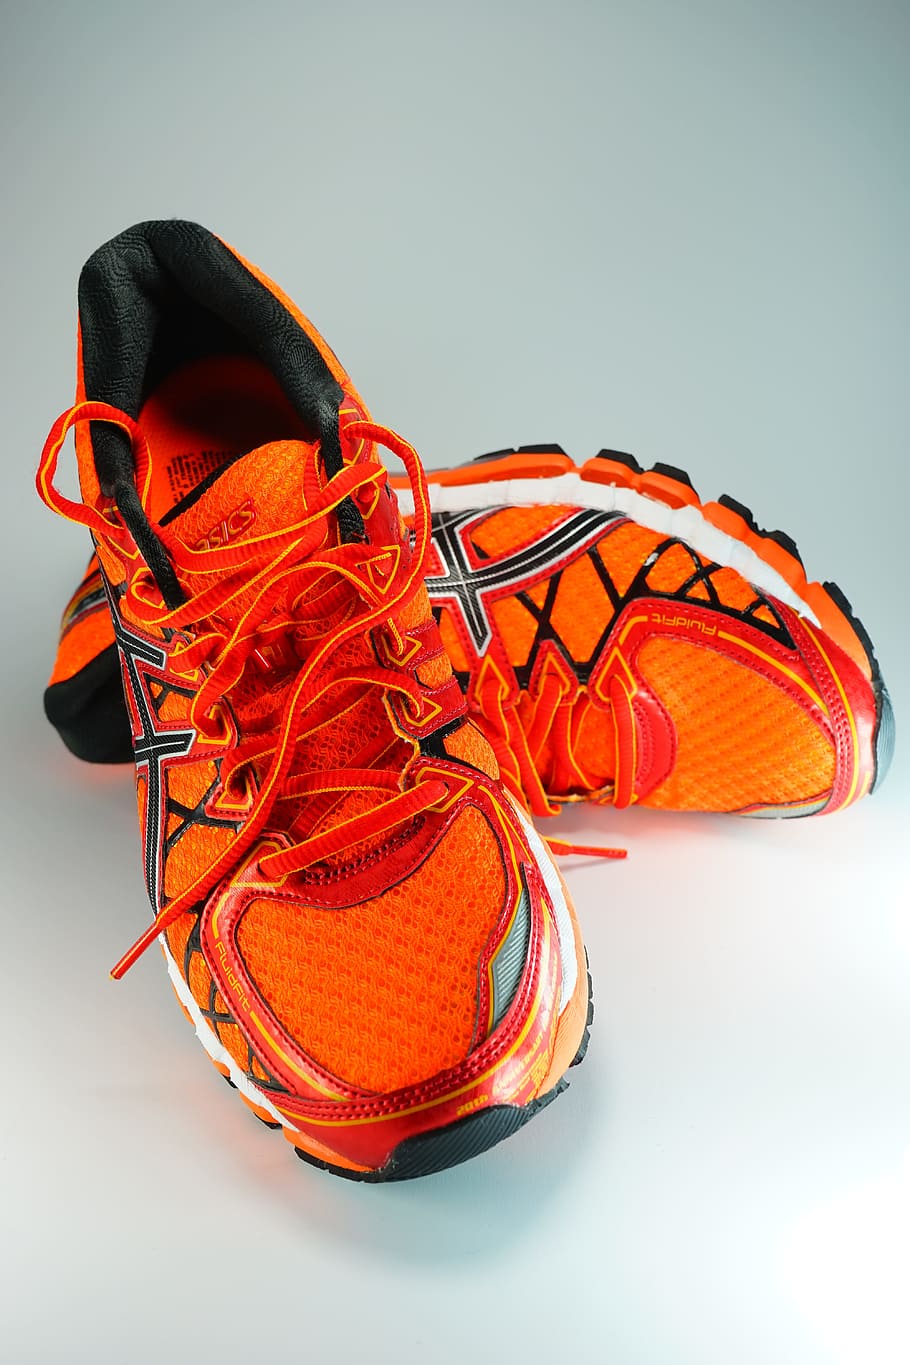 par, naranja y blanco, asics, correr, zapatos, zapatillas de deporte, zapatos para correr, calzado deportivo, trotar, deporte